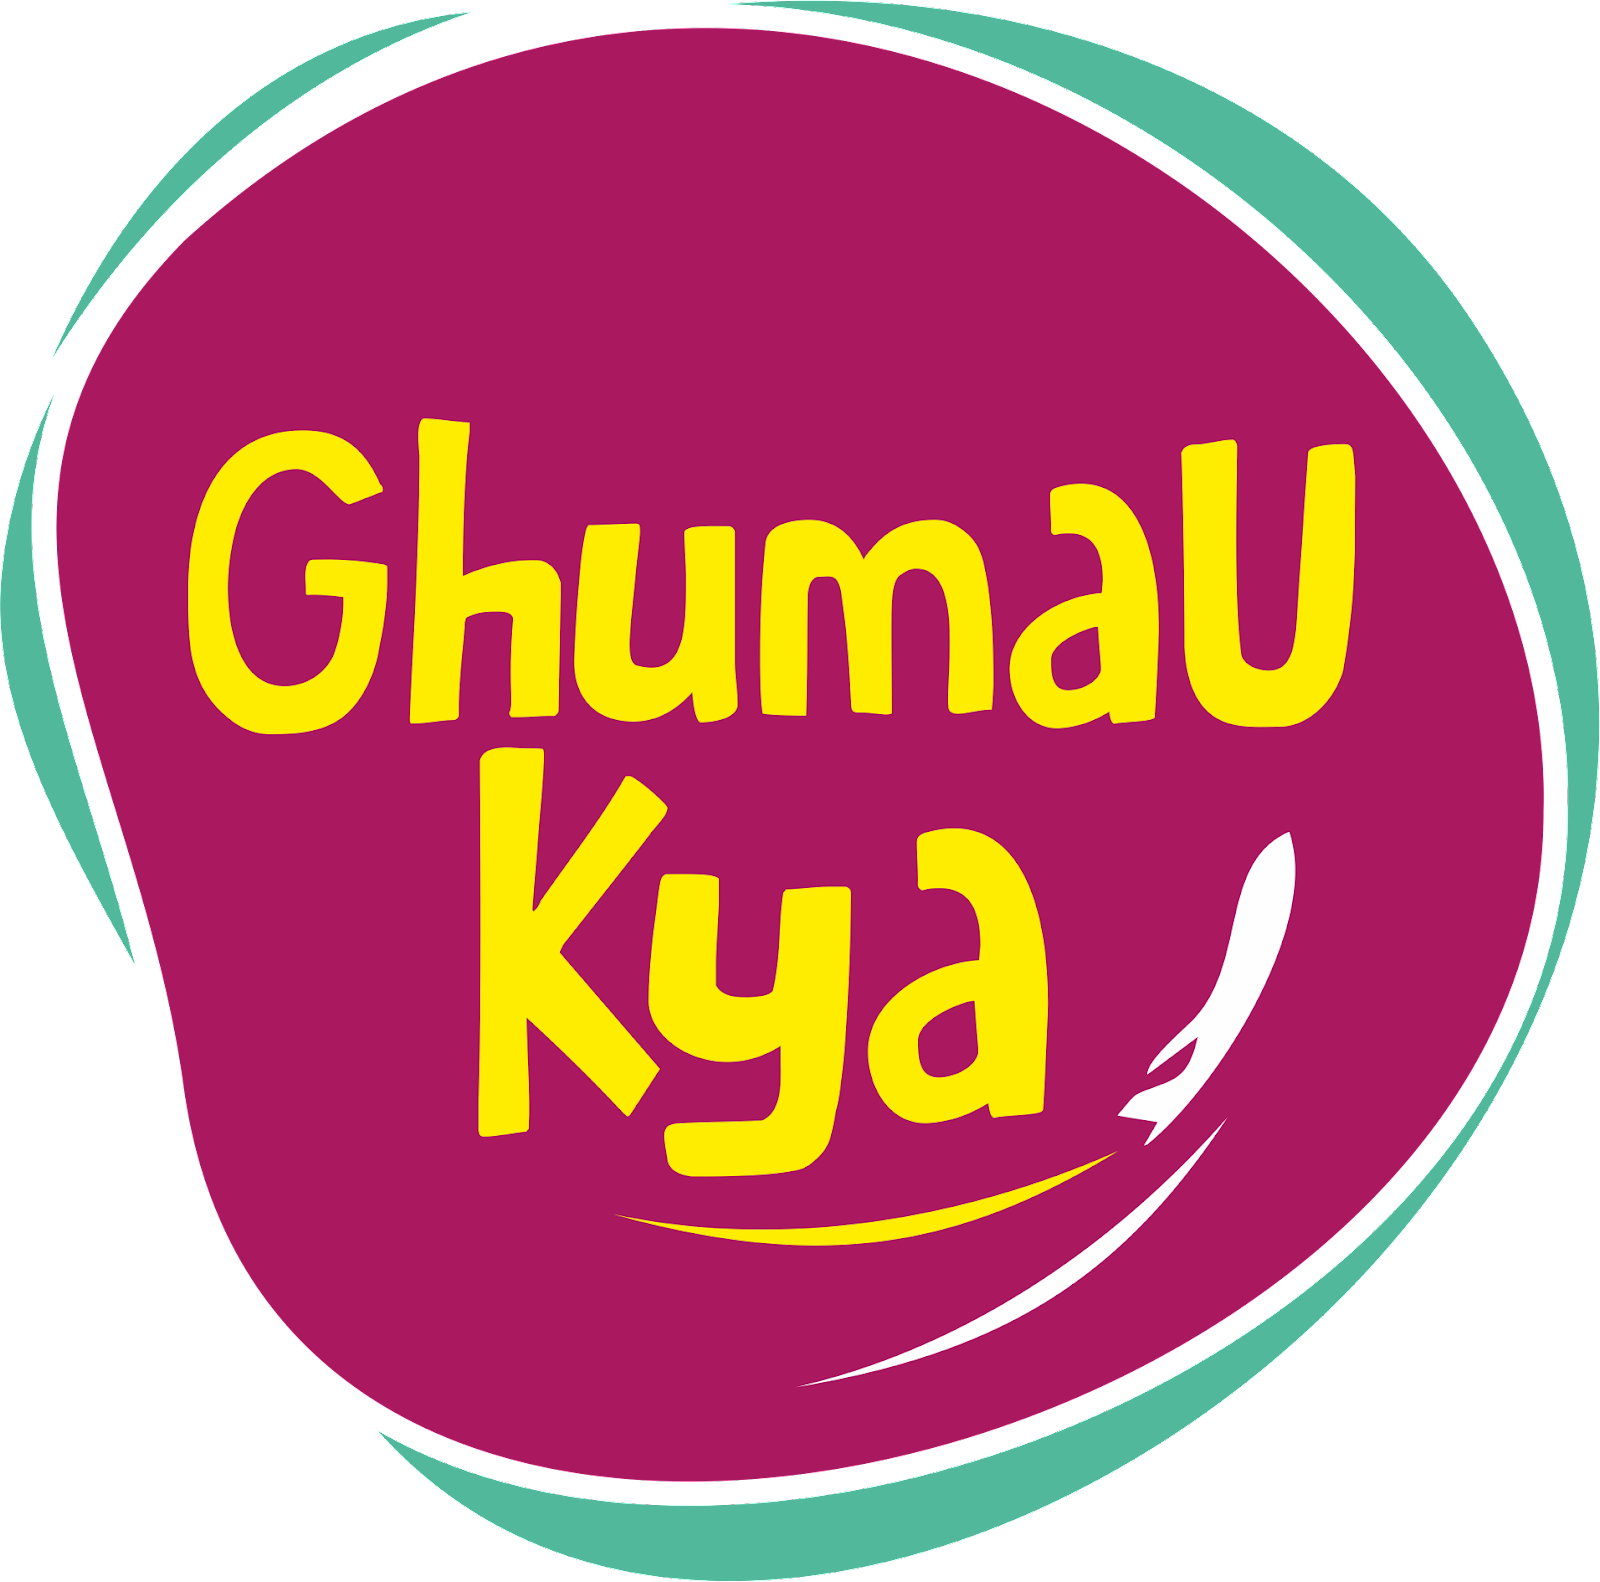 Ghumau Kya